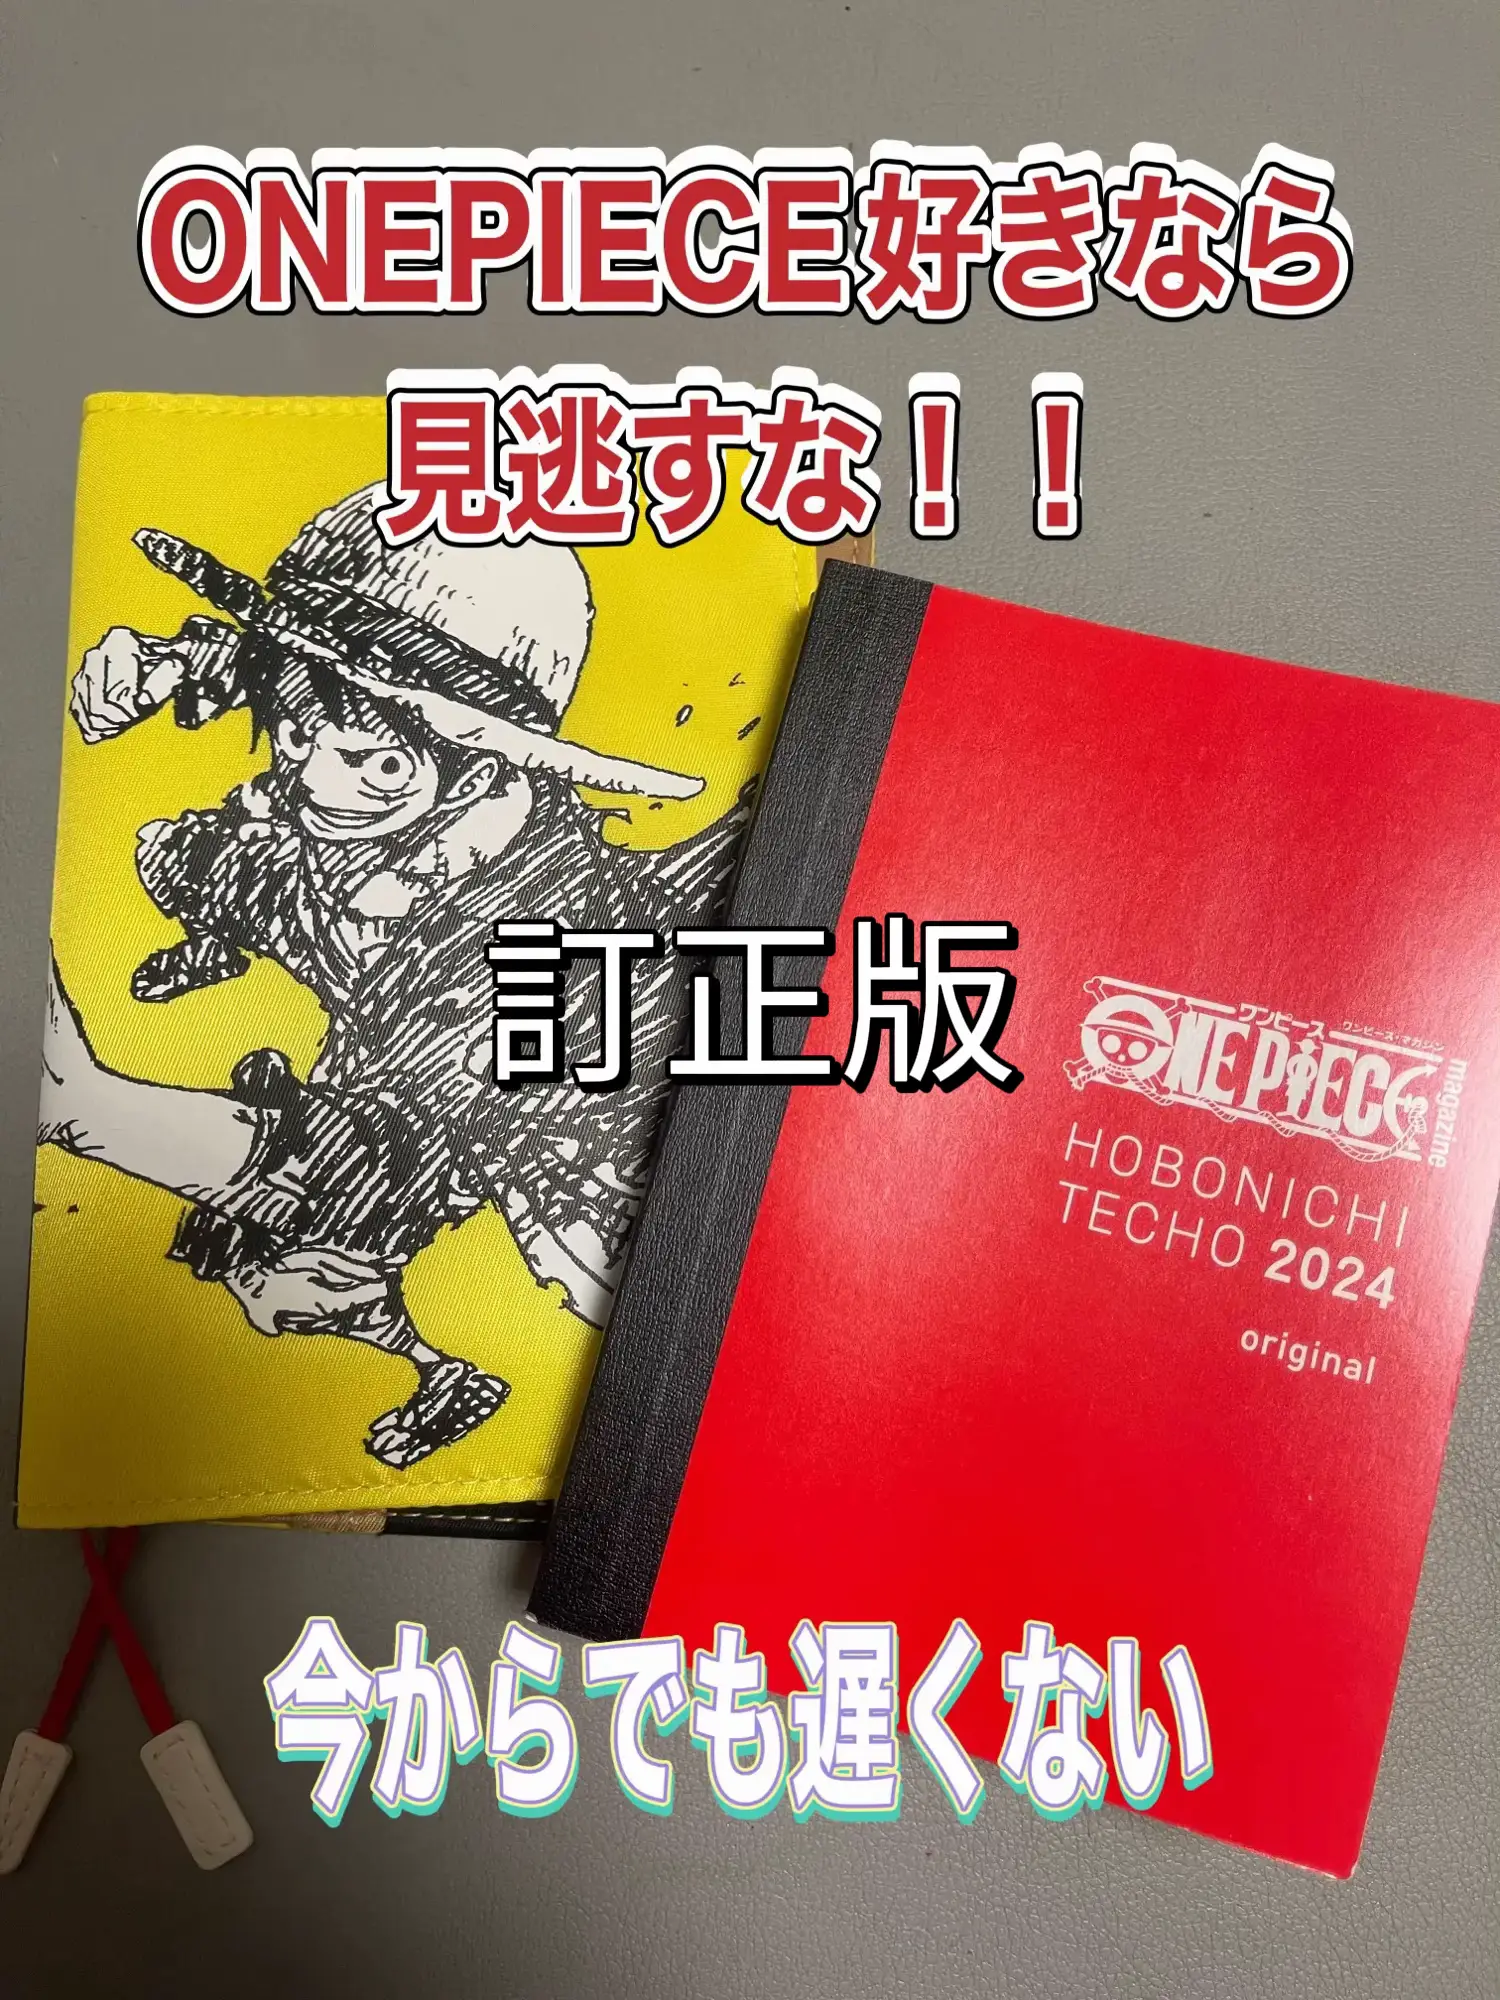 One Piece ロビン - Lemon8検索